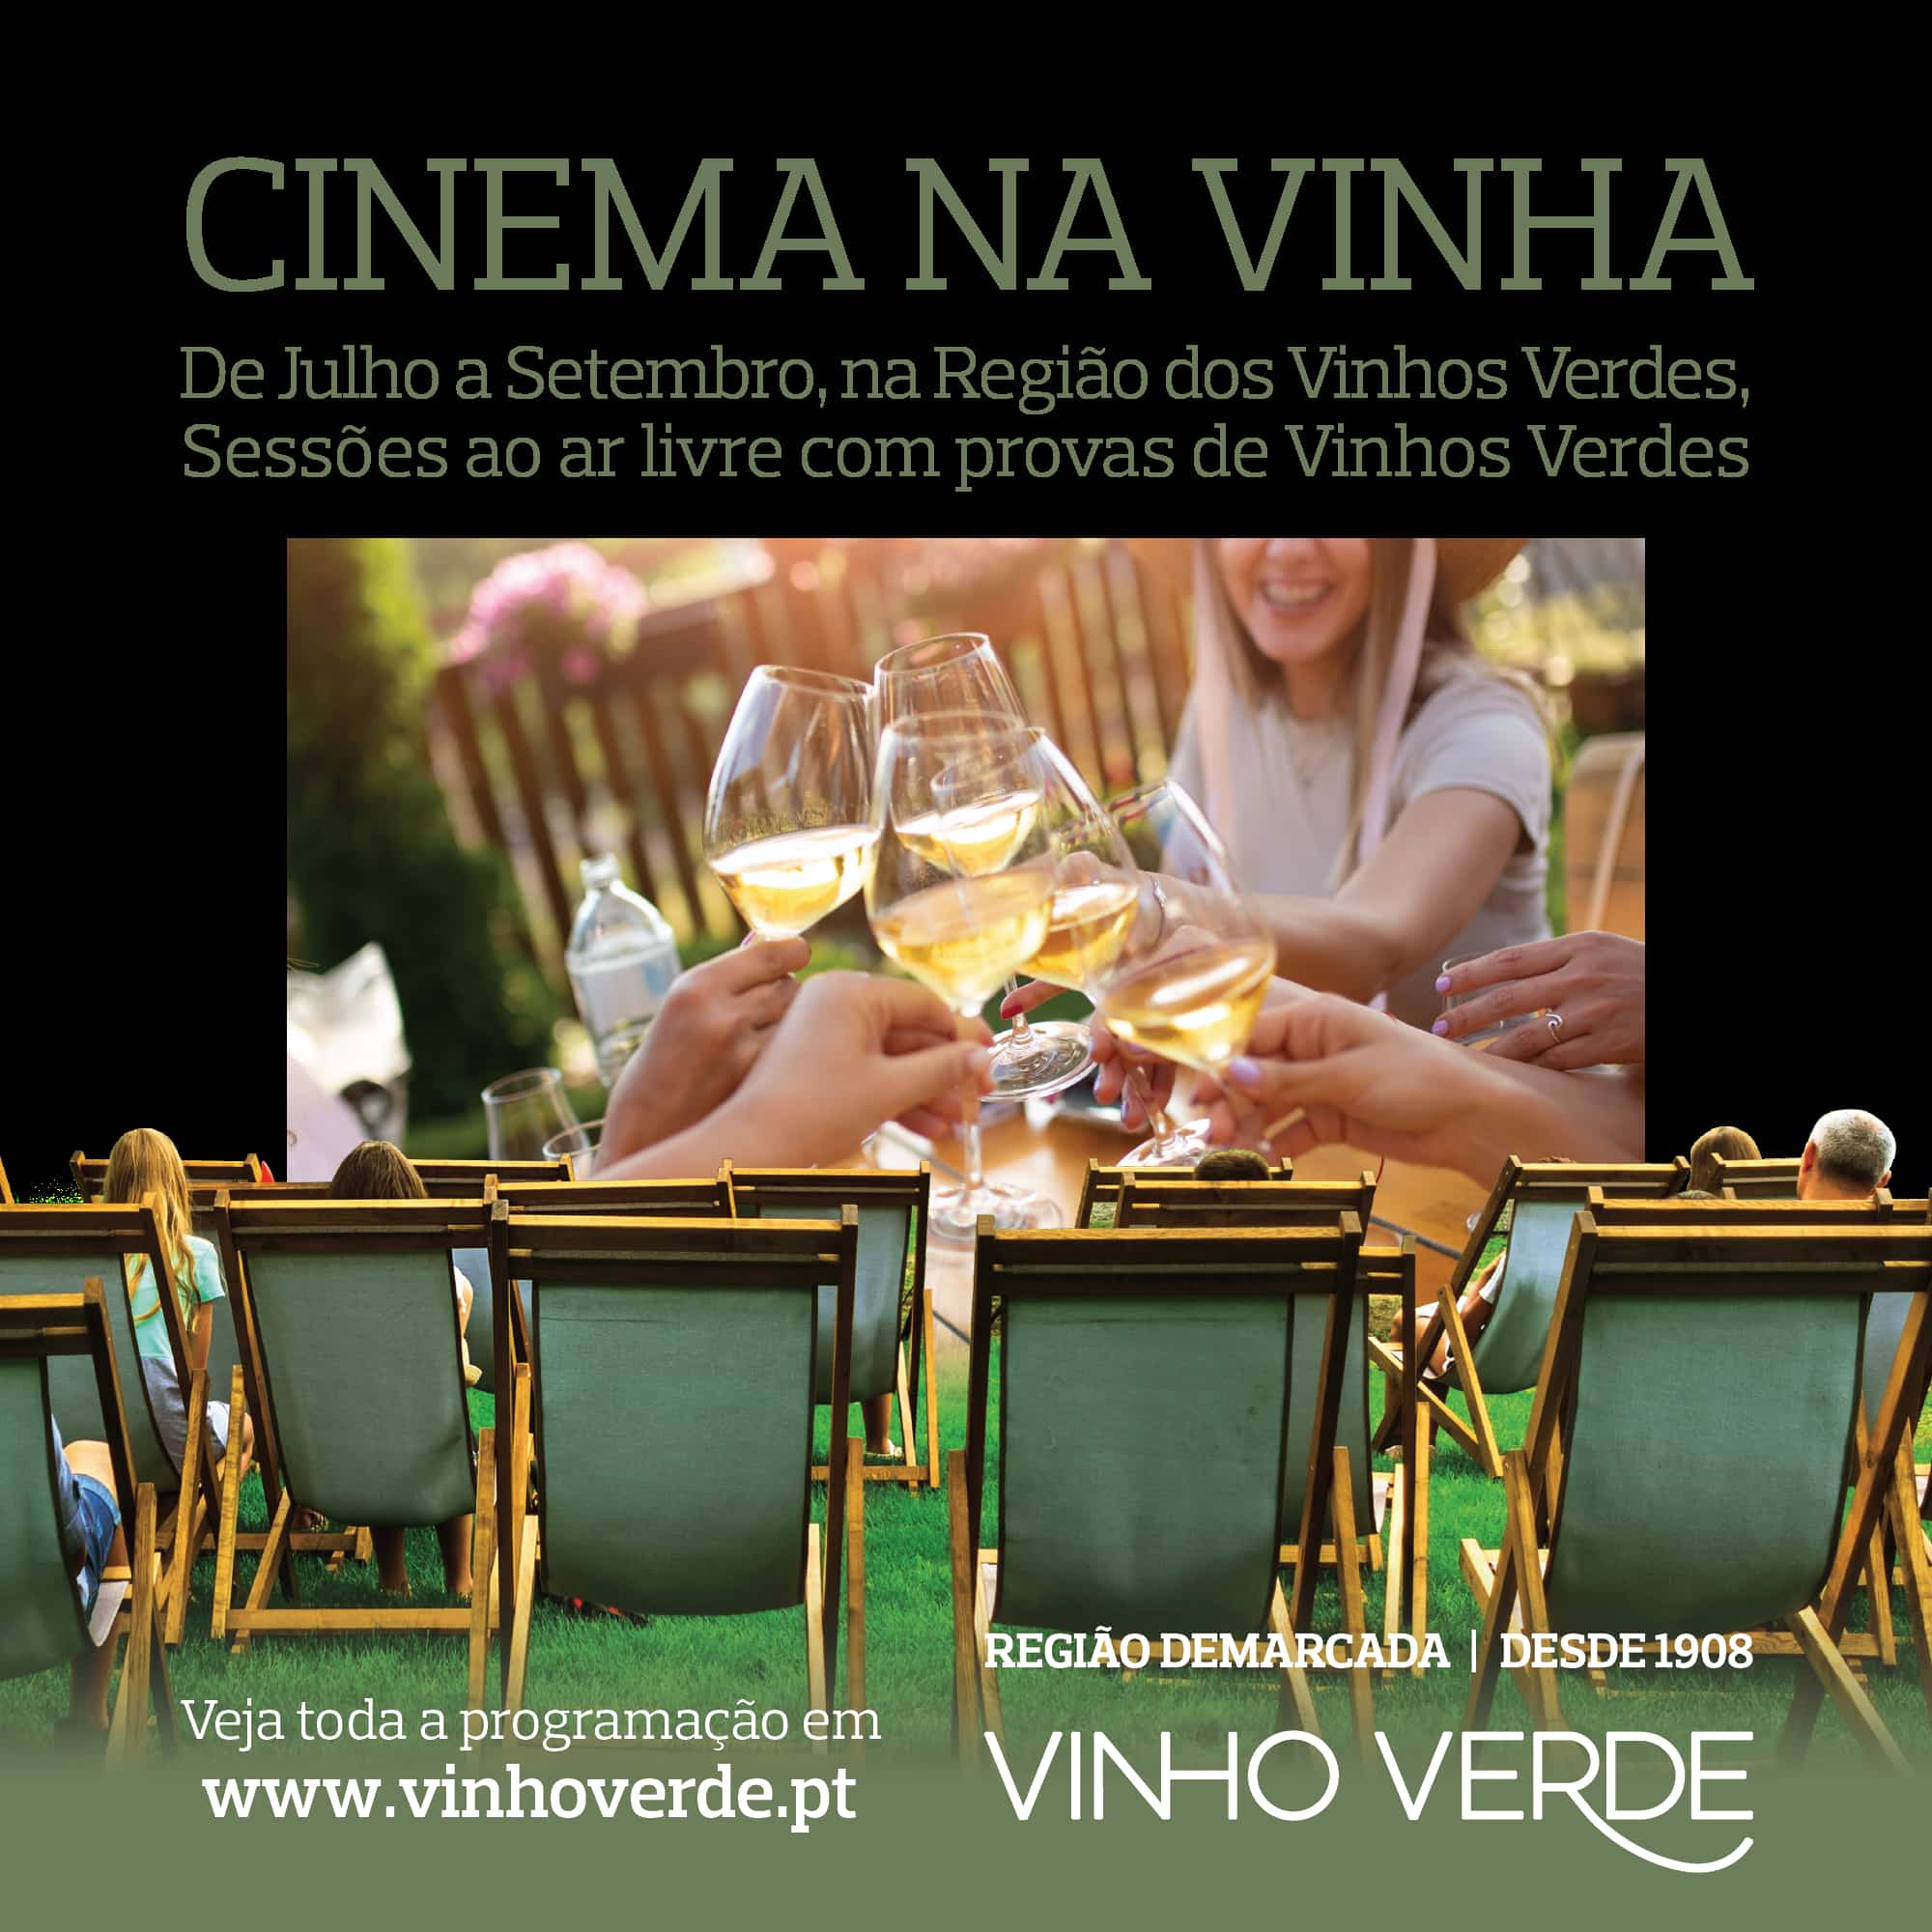 Cinema na Vinha - Casa do Vinho Verde - Porto